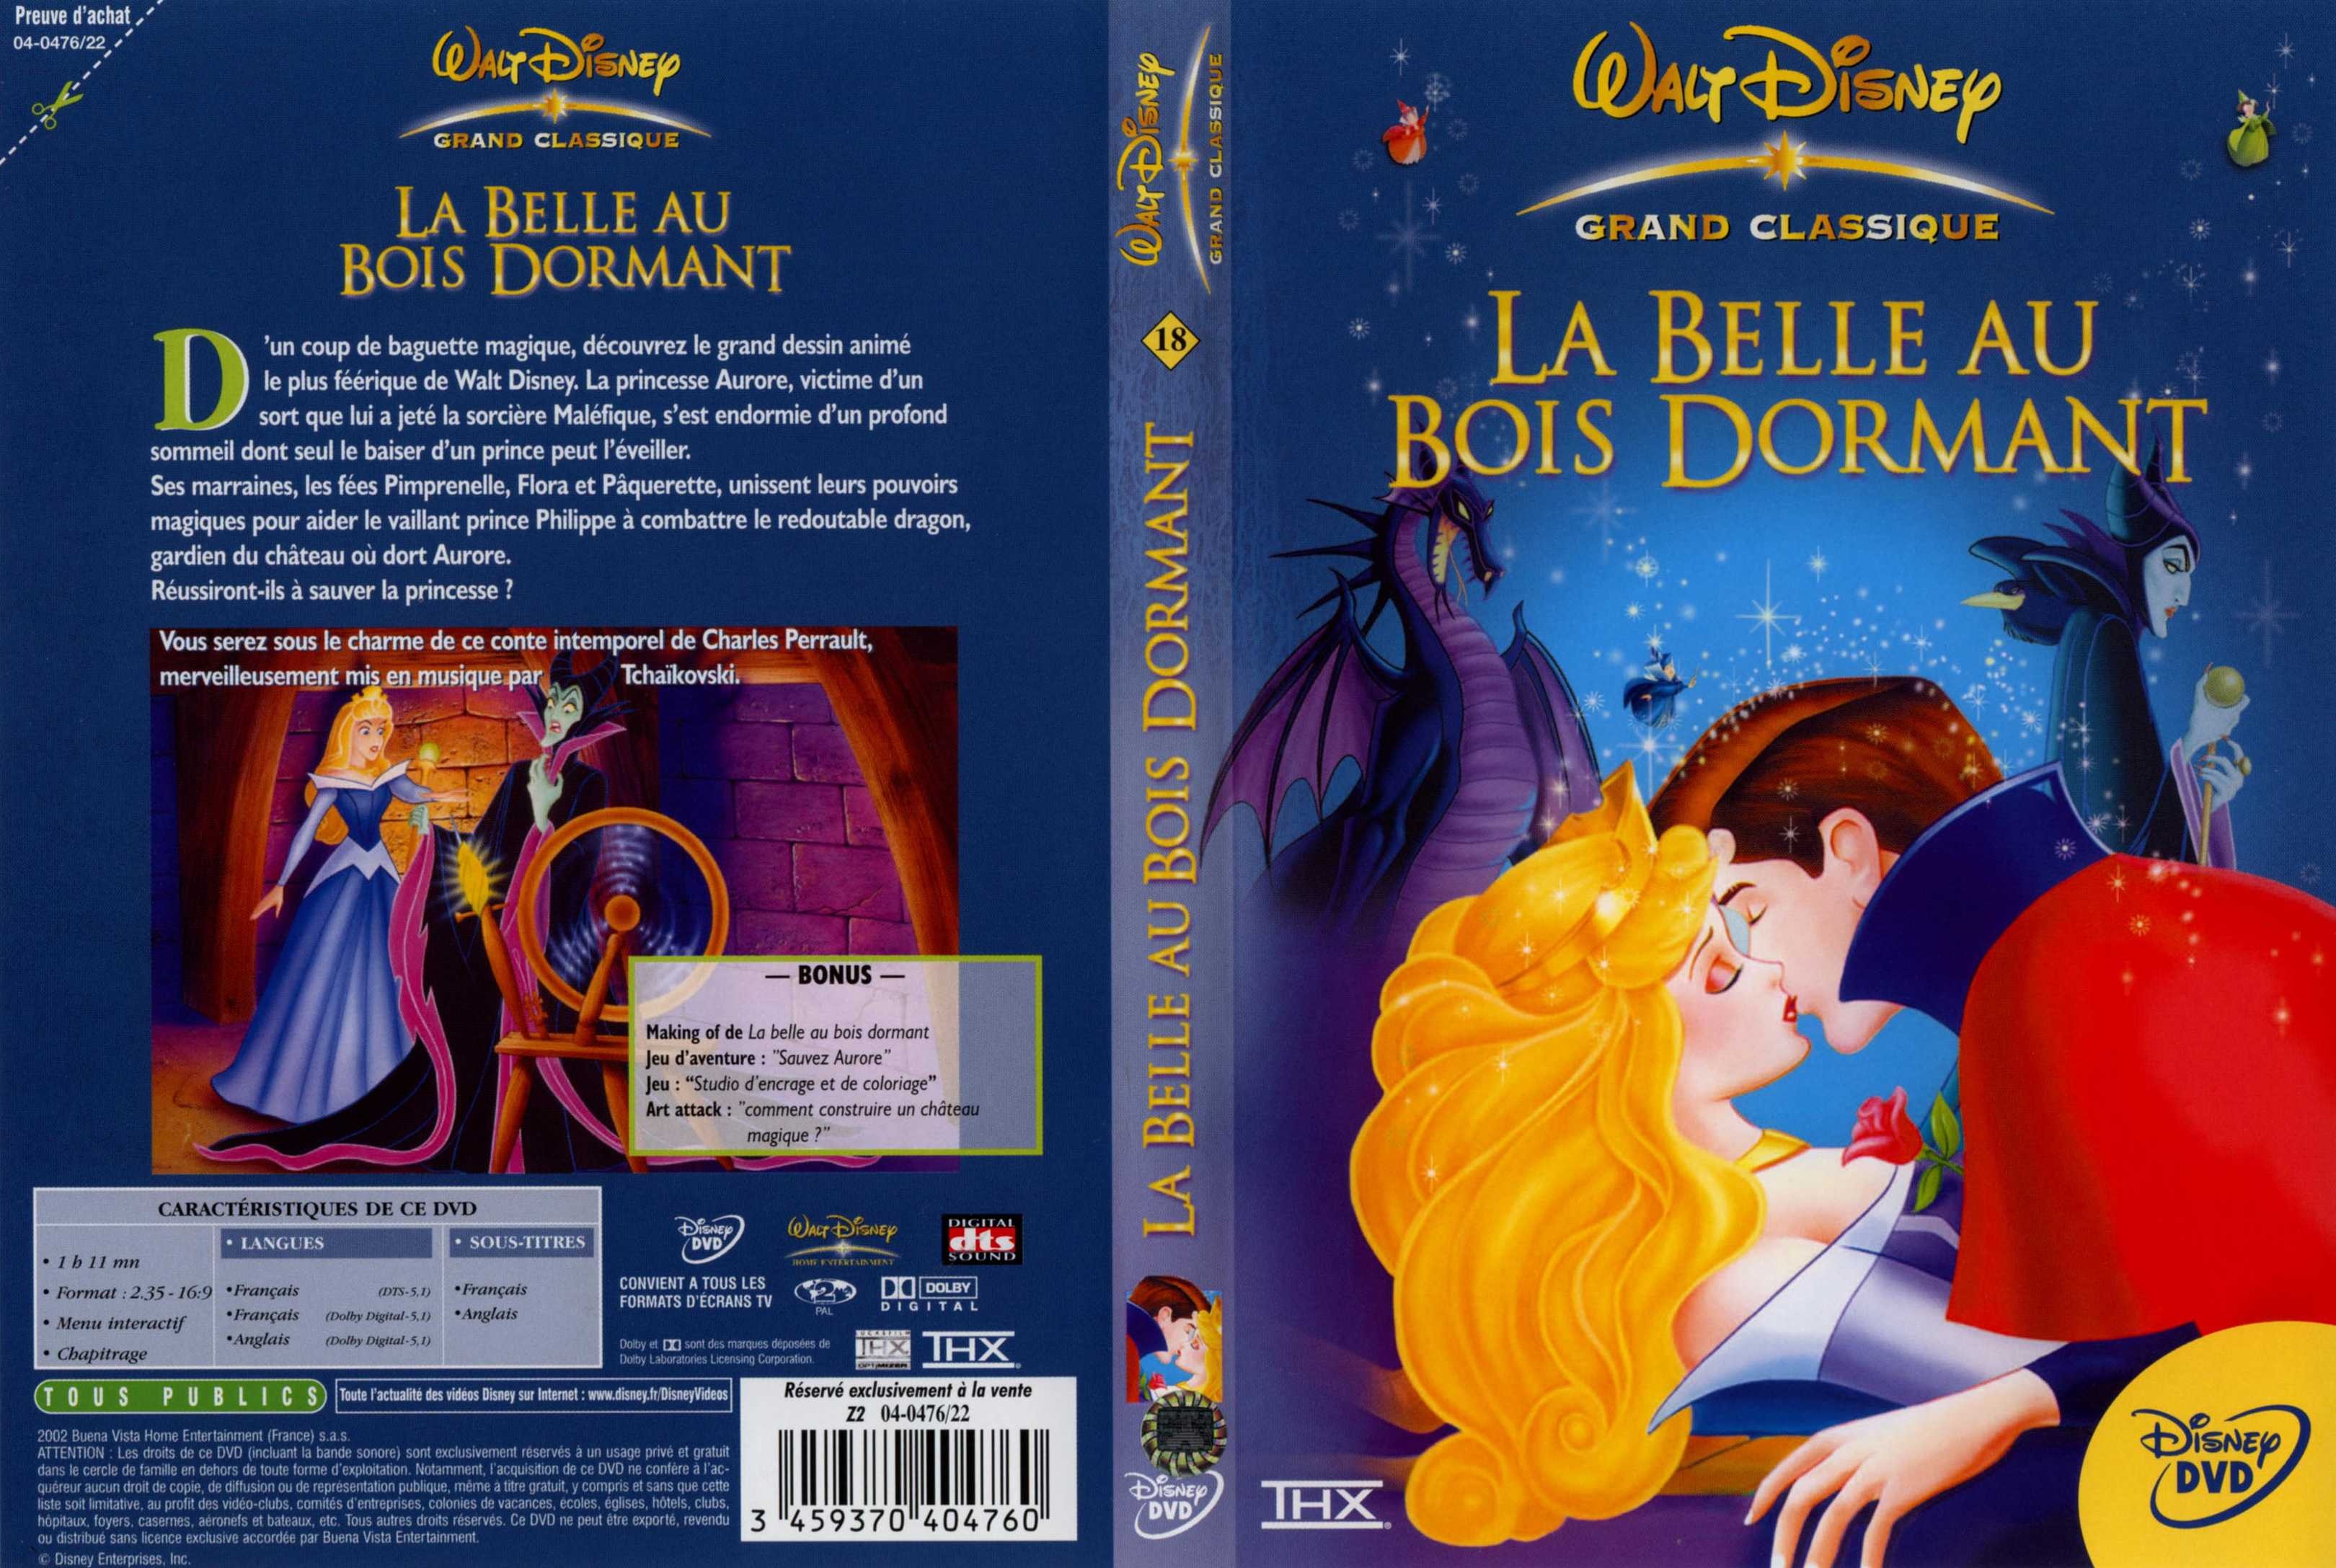 Jaquette DVD La belle au bois dormant v2